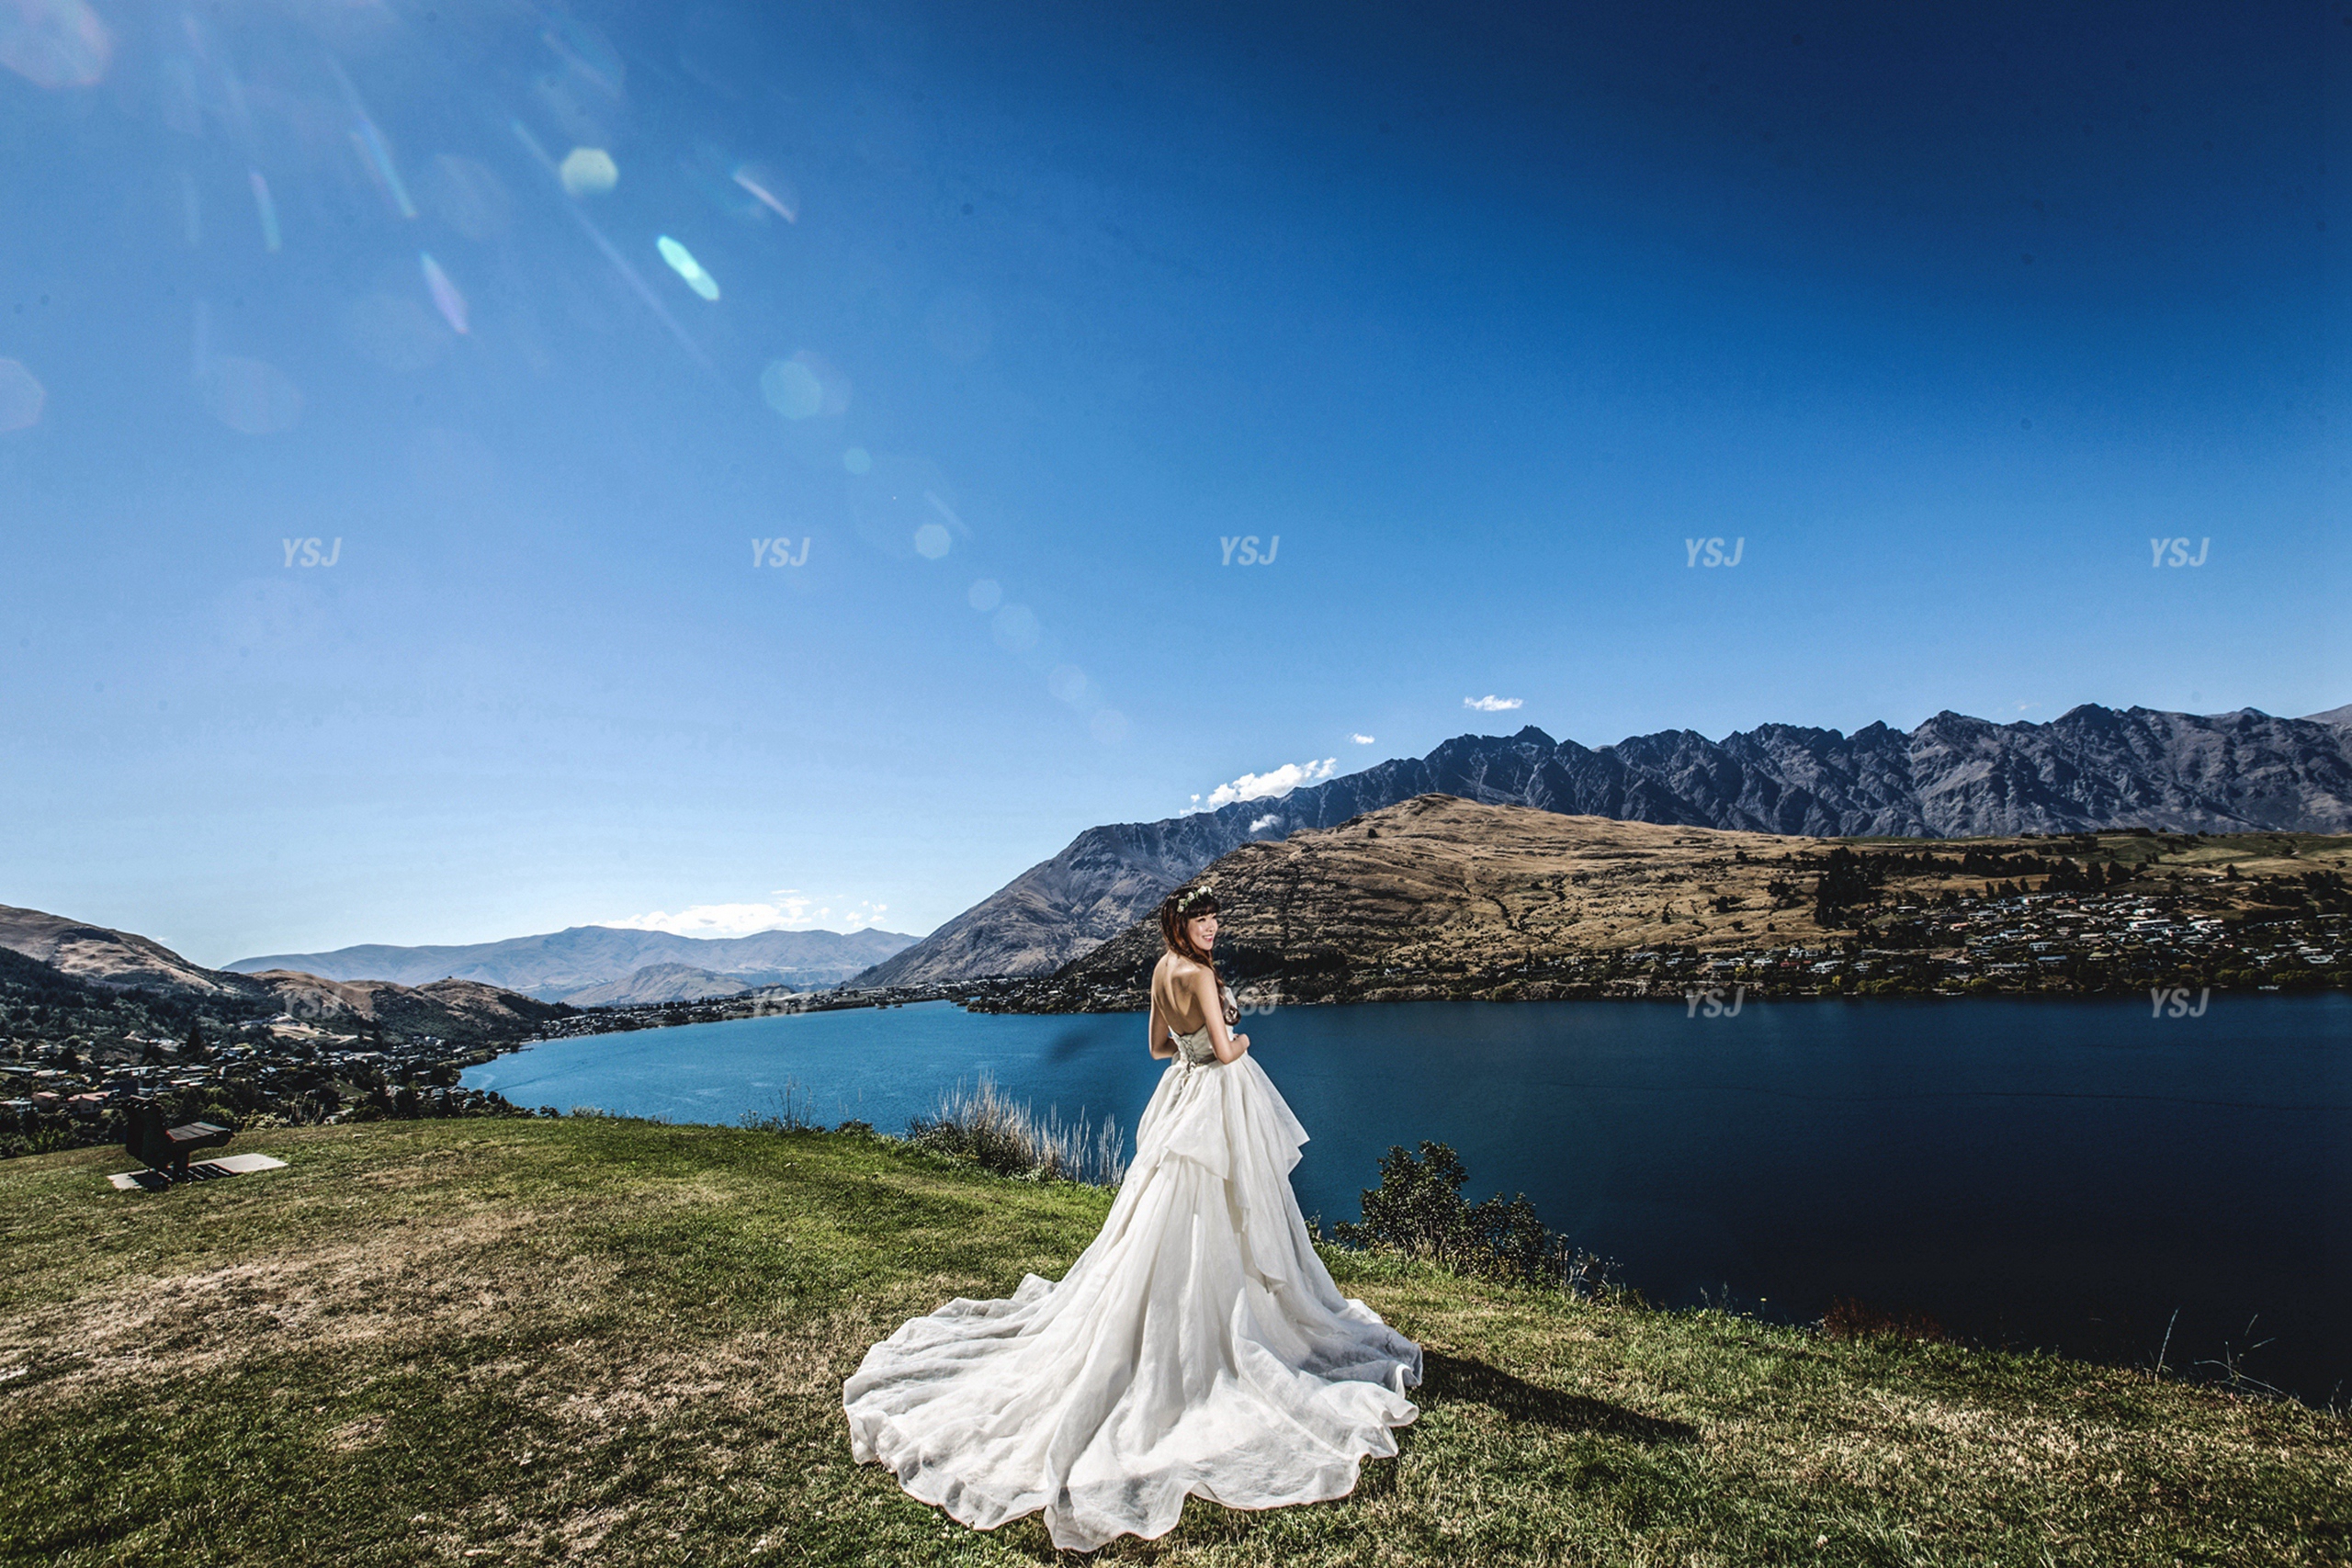 干货新西兰皇后镇的婚礼实记 【皇后镇风景】  皇后镇是一个被南阿尔卑斯山包围的美丽小镇, 也是一个依